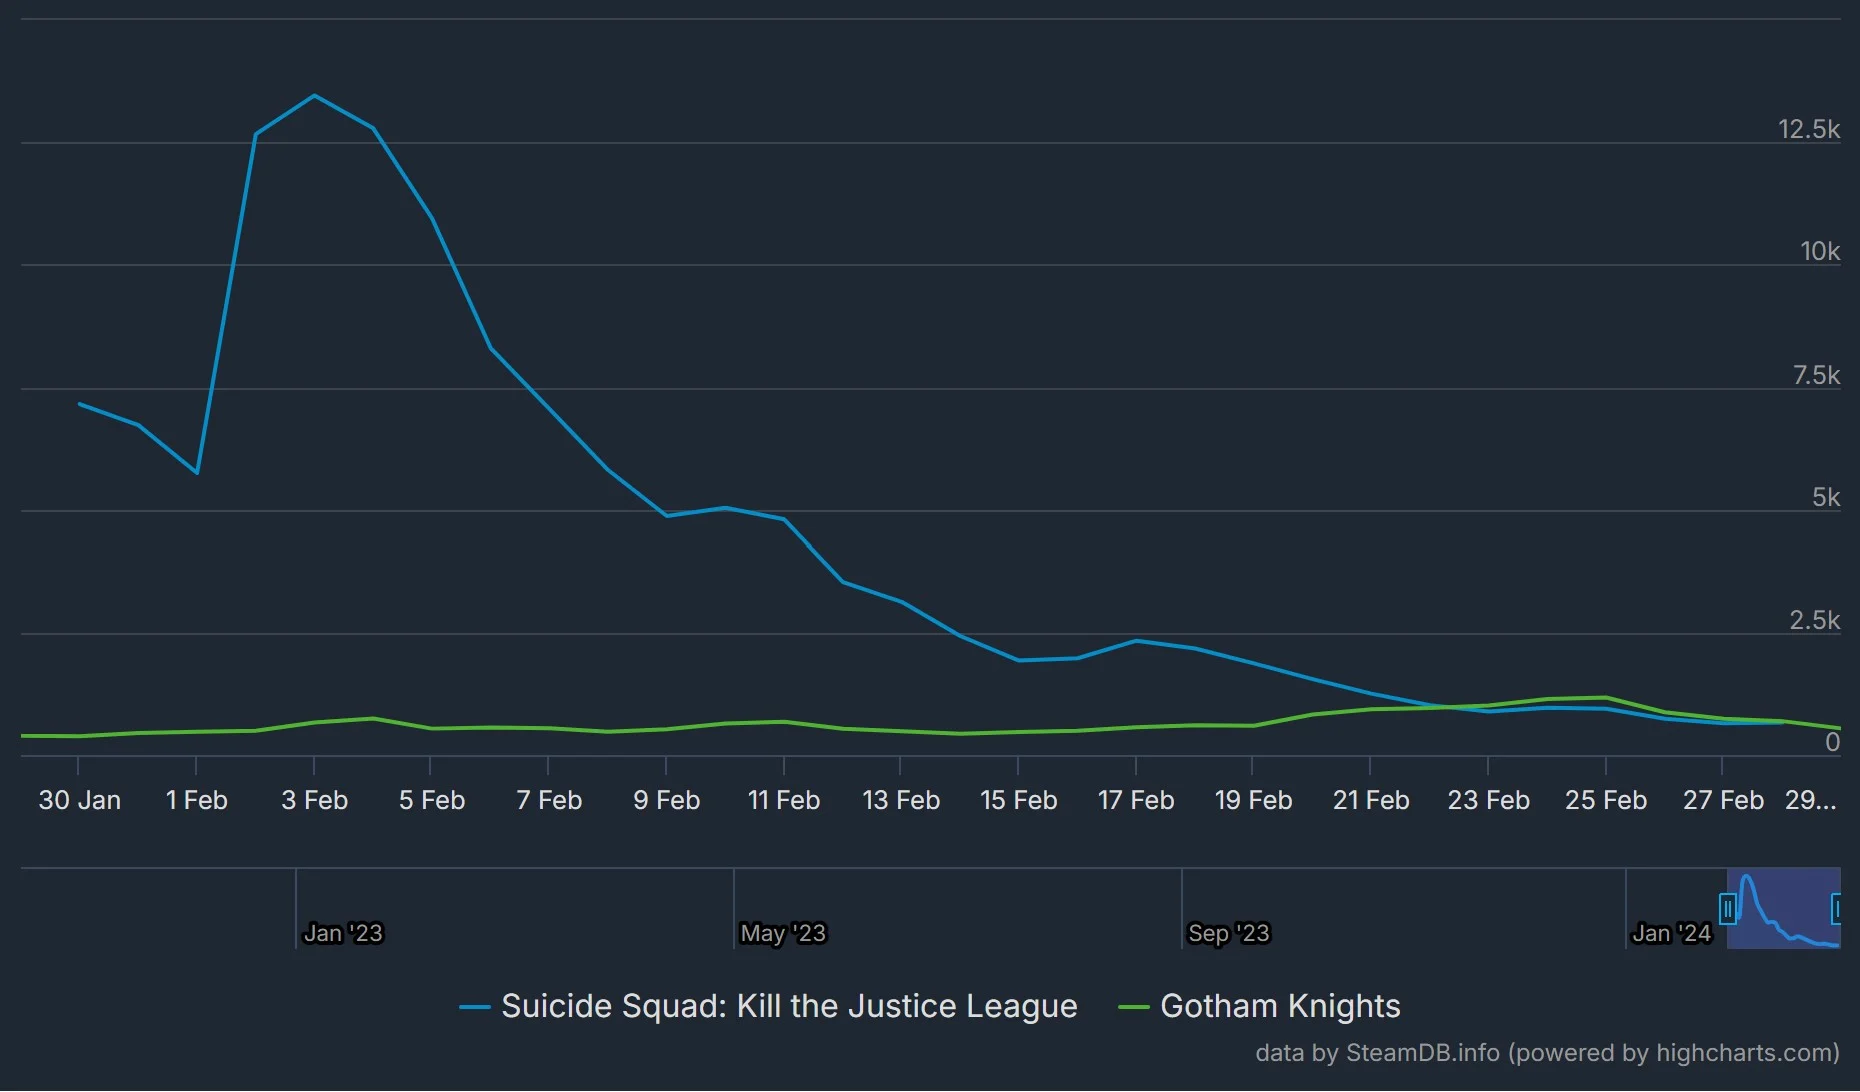 تعداد بازیکنان همزمان suicide squad حالا از gotham knights هم کمتر است